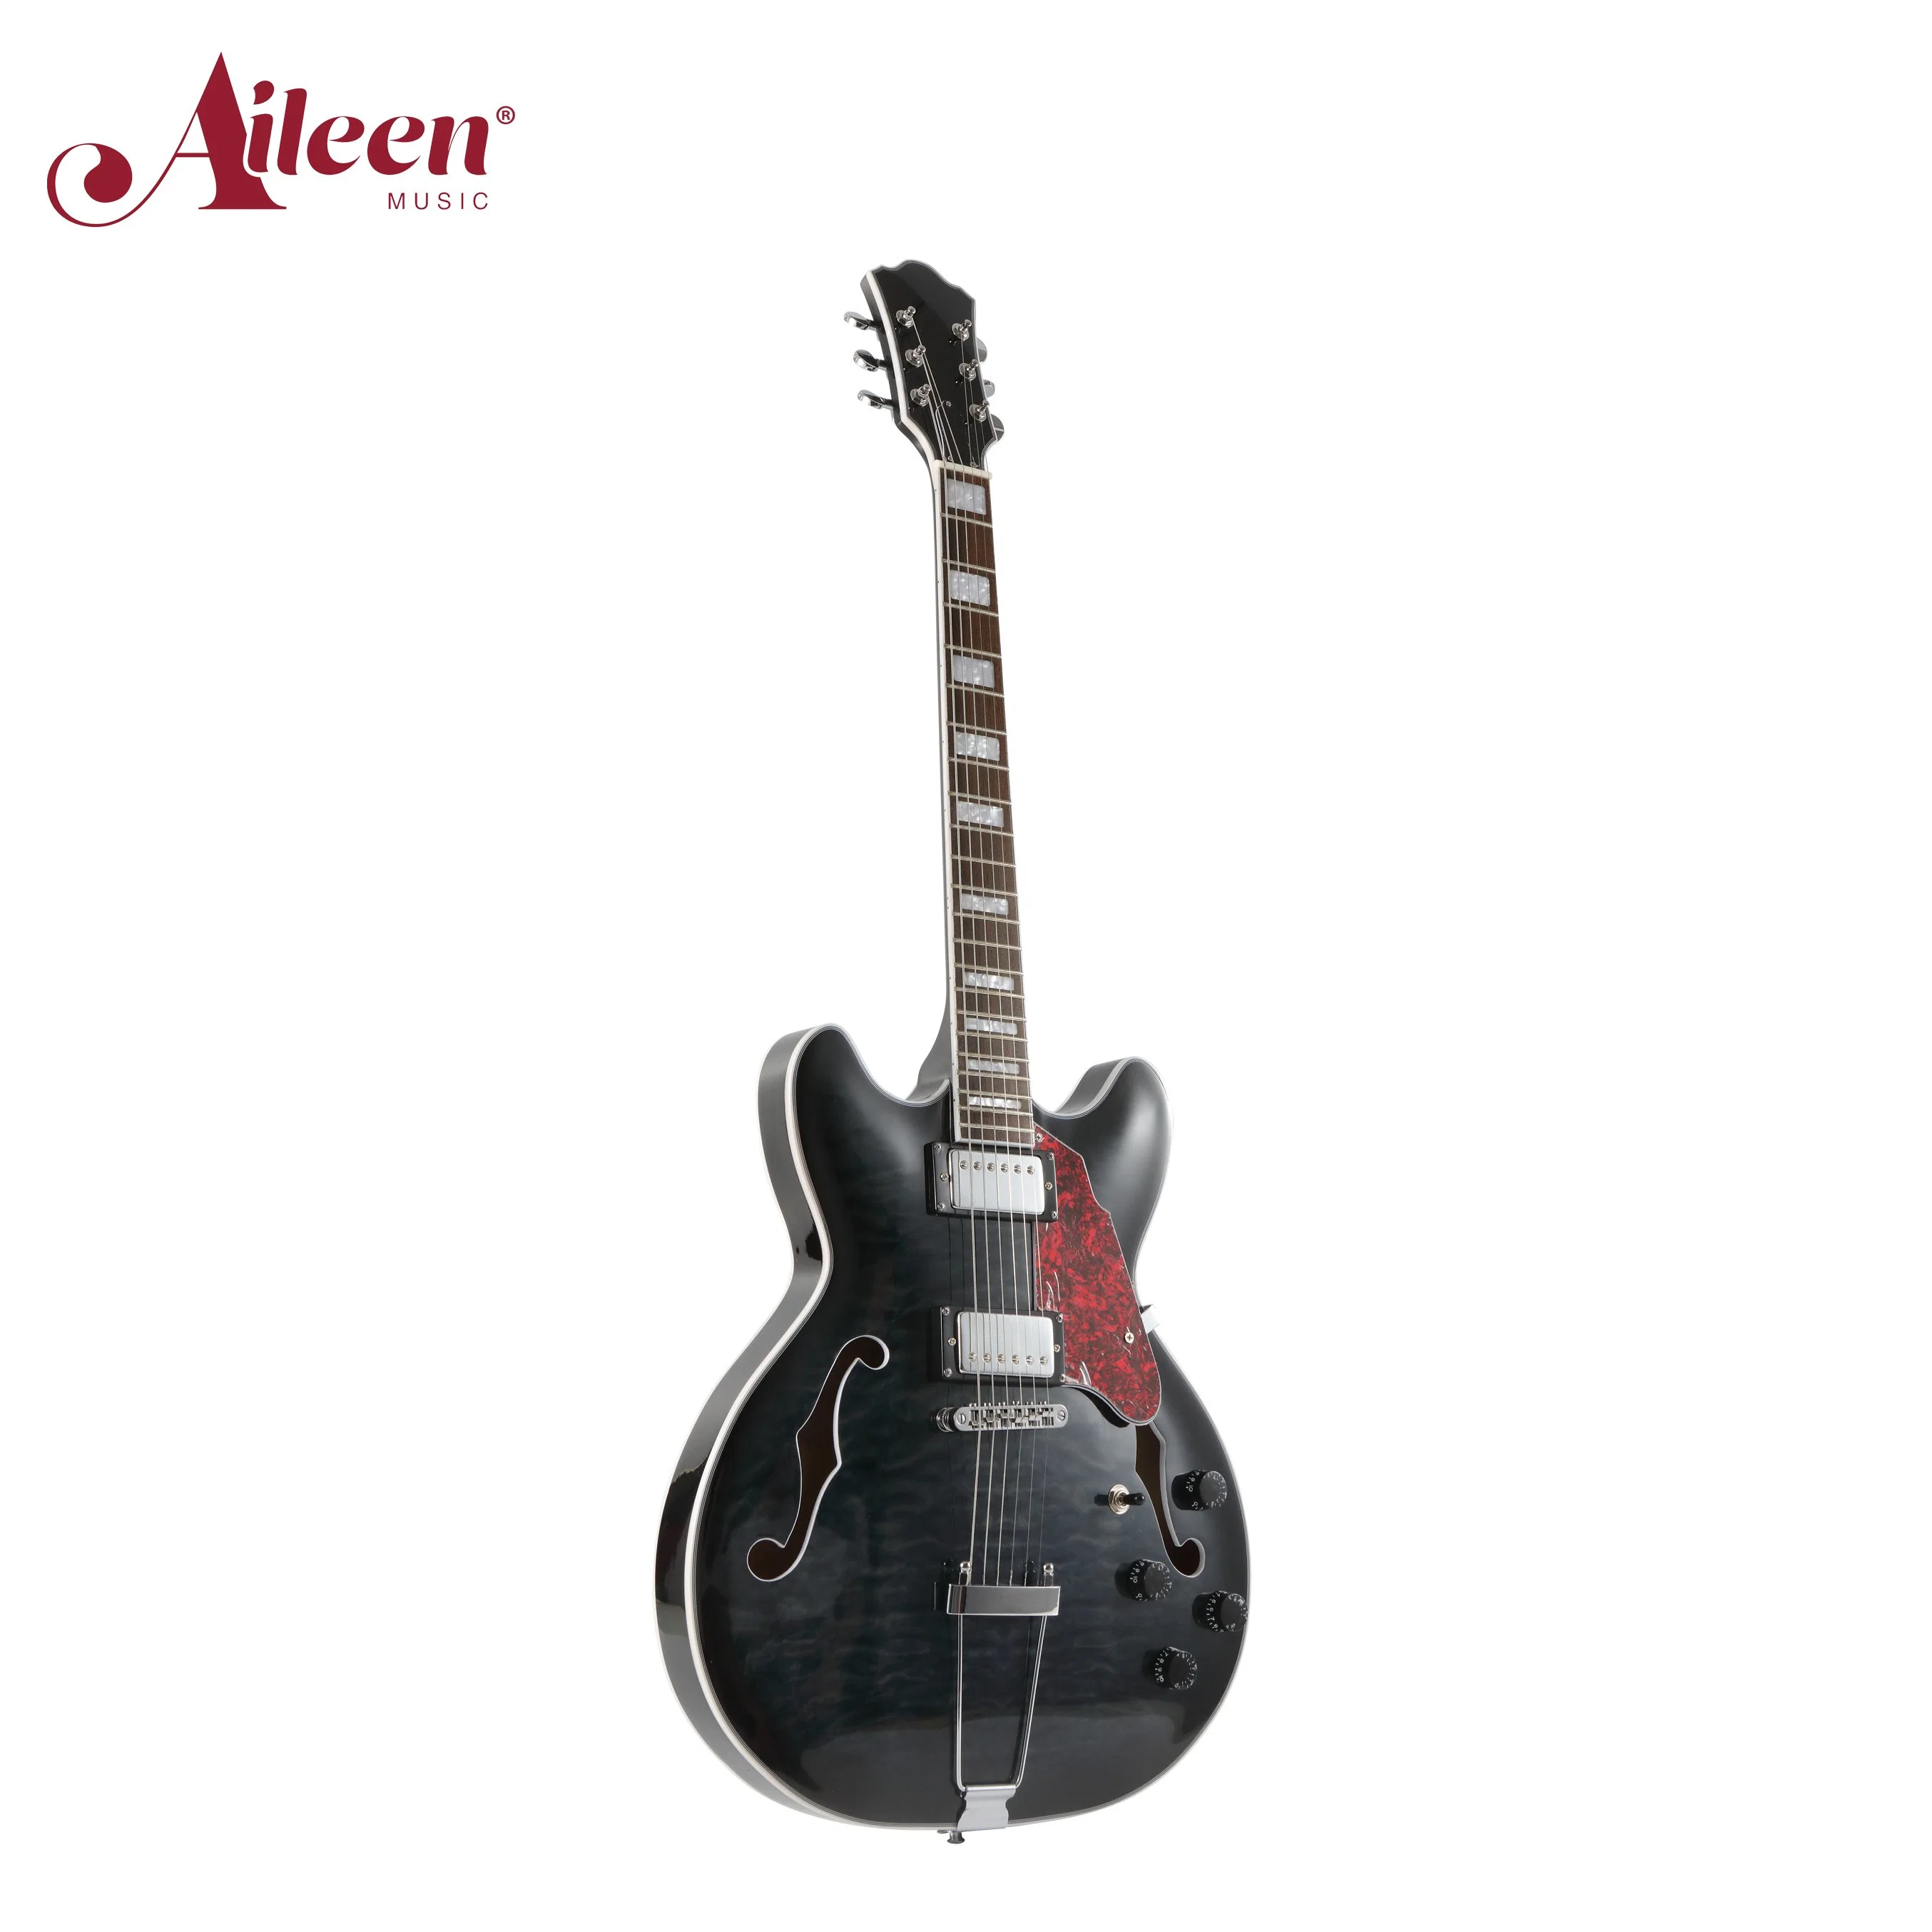 Haute qualité/performance à coût élevé professionnelle OEM Corps Semi-Hollow style Jazz (guitare électrique EGJ351)